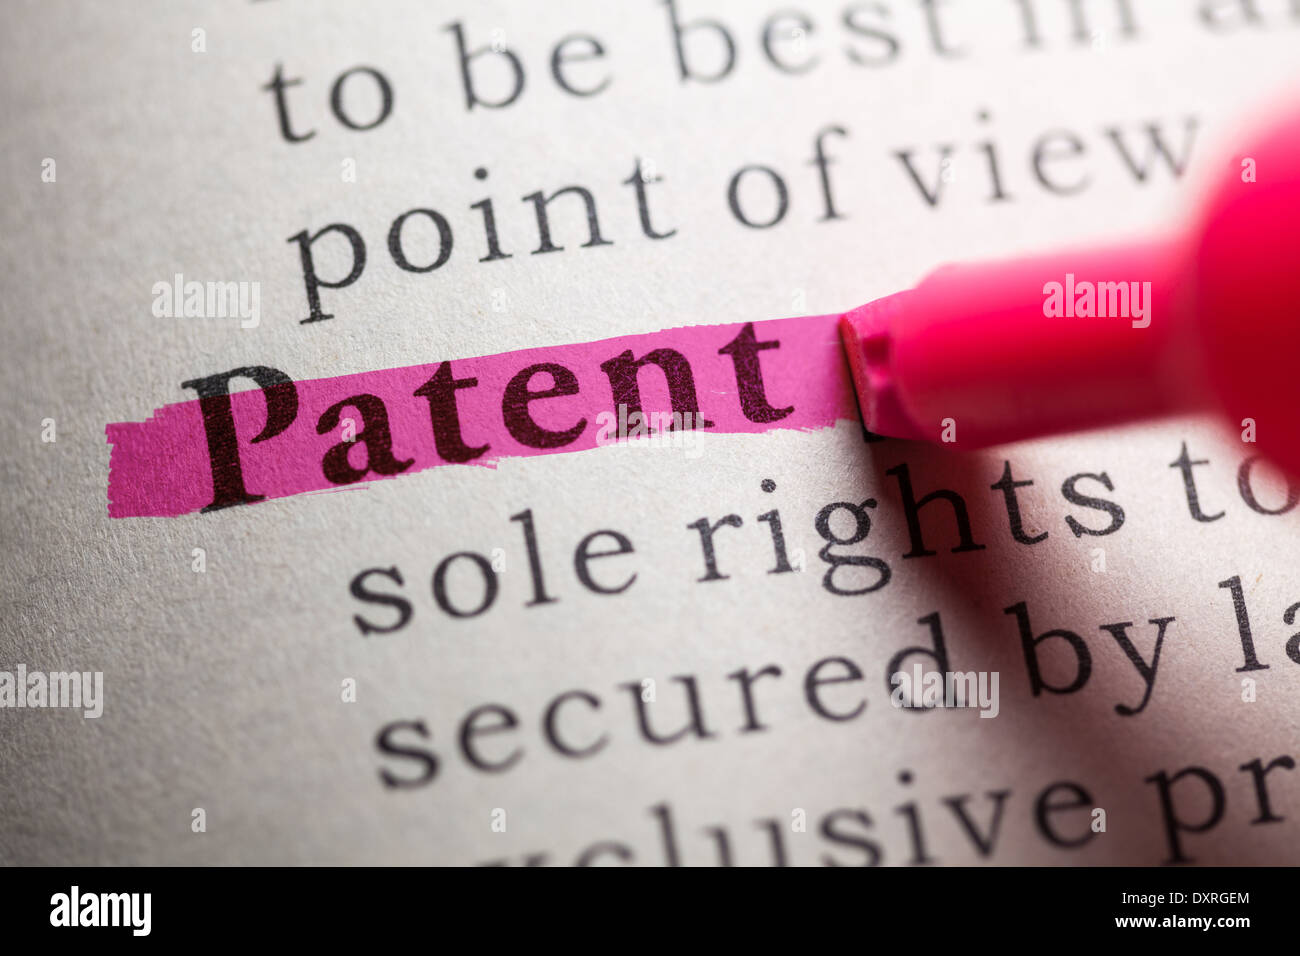 Diccionario de falsos, la definición de la palabra "patente. Foto de stock